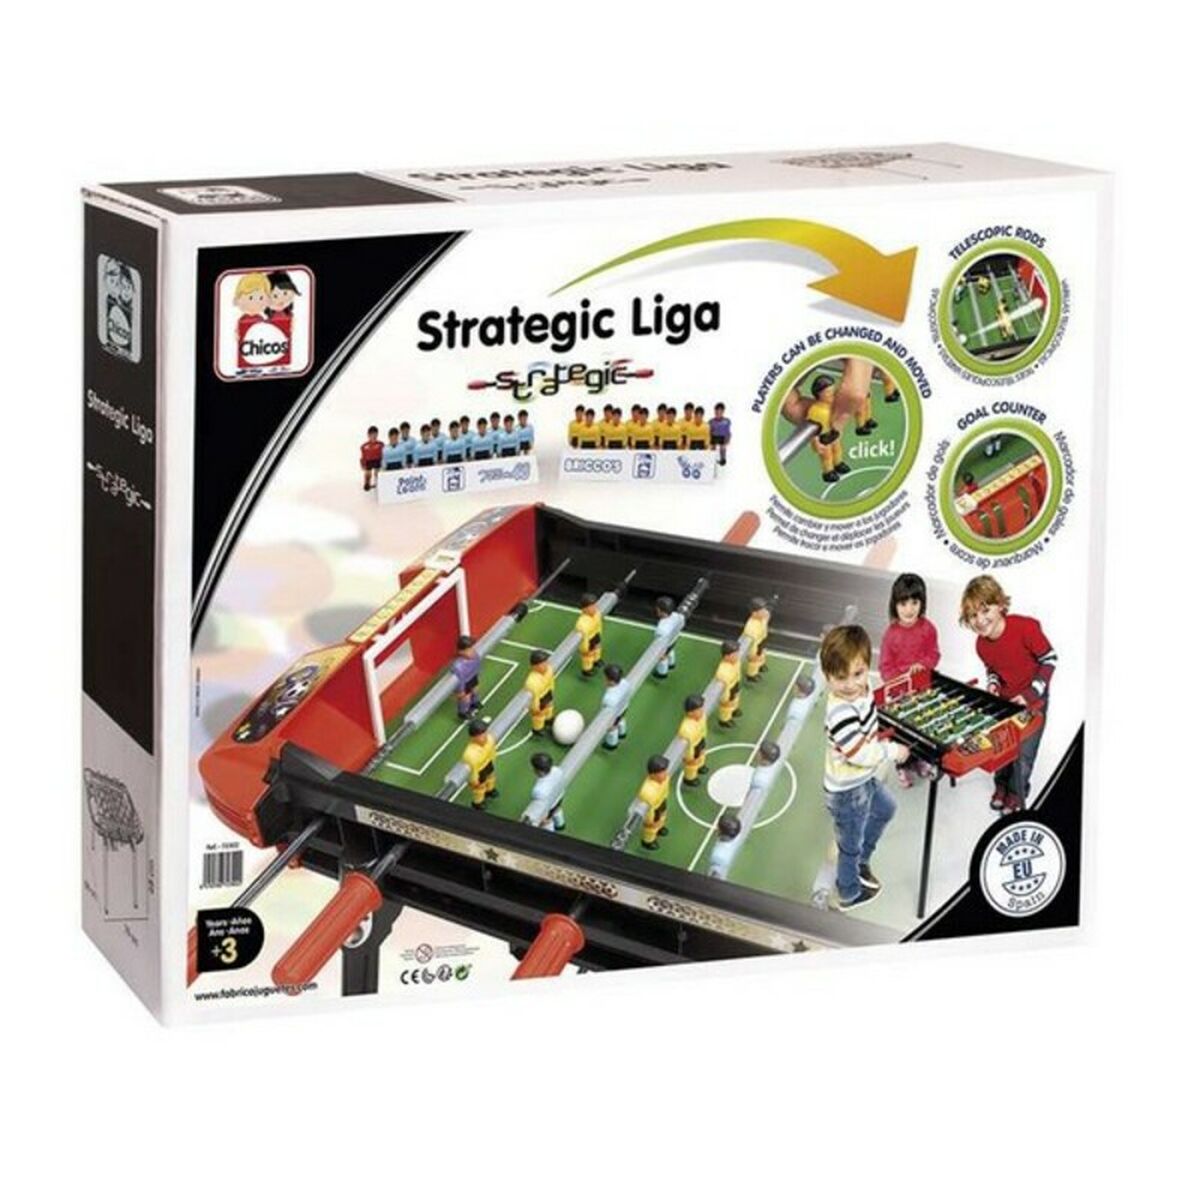 Barnfotboll Strategic Liga Chicos 79 x 66 x 68 cm (79 x 66 x 68 cm)-Leksaker och spel, Spel och tillbehör-Chicos-peaceofhome.se